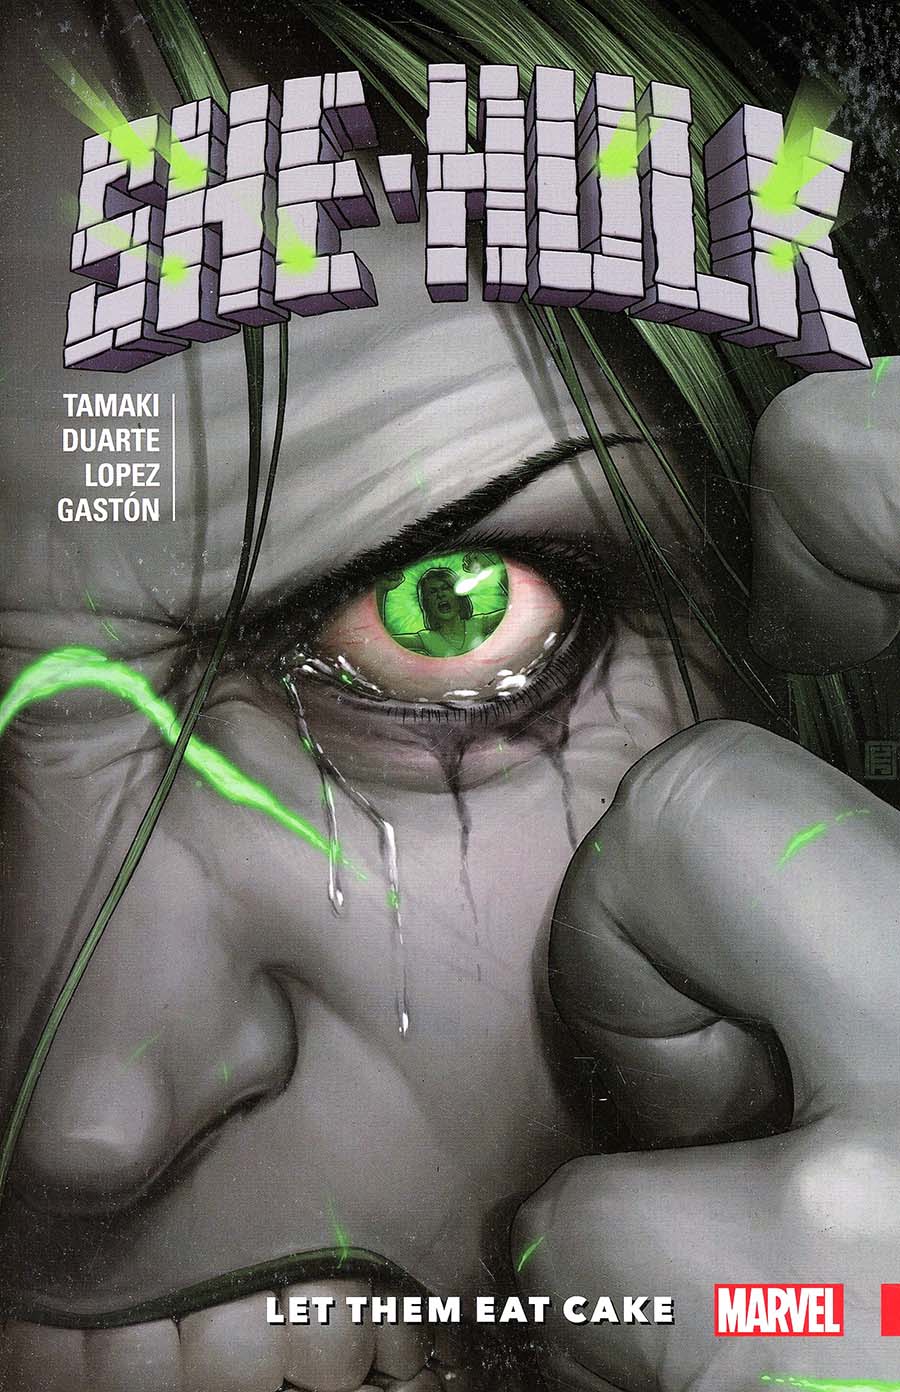 She-Hulk (2016) Vol 2 Let Them Eat Cake TP